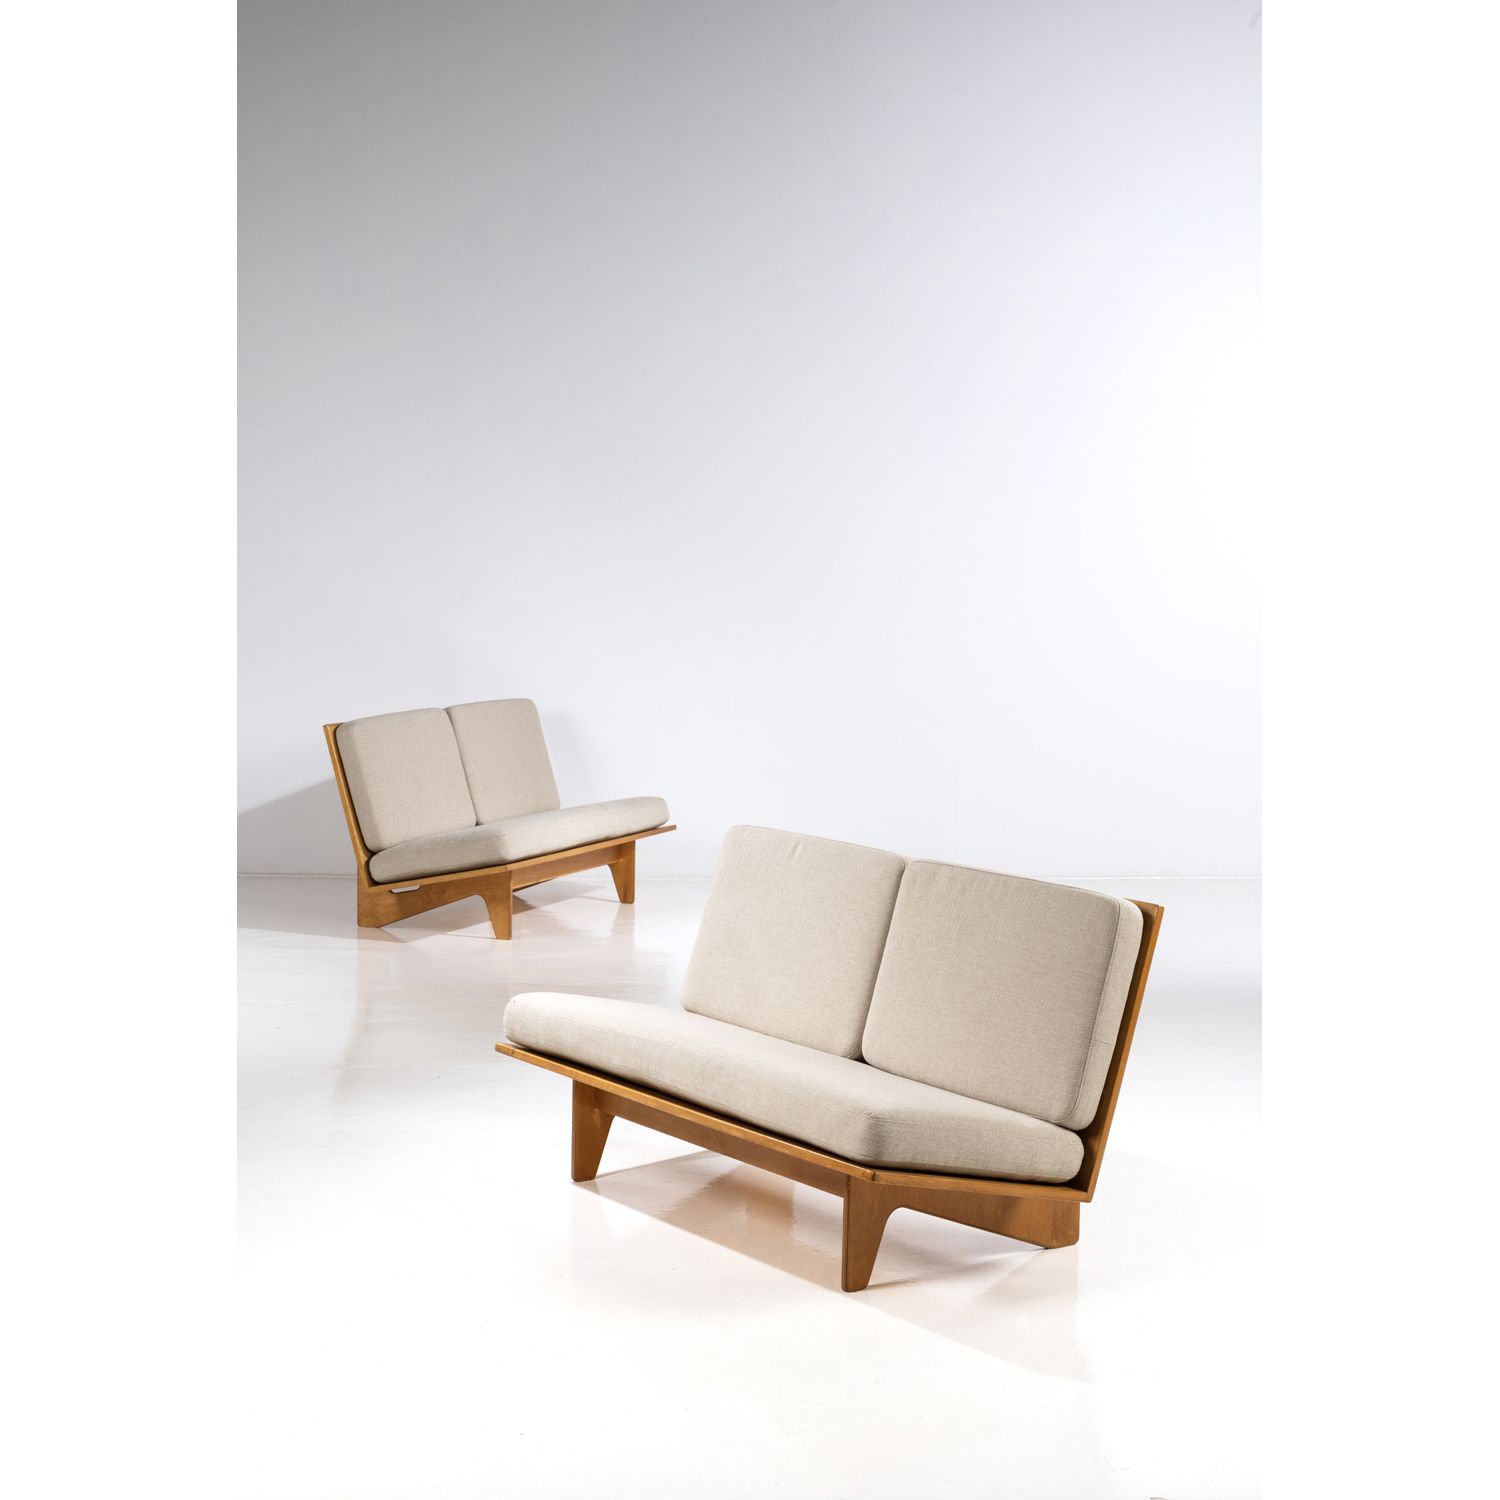 Null 伊尔马利-塔皮奥瓦拉(1914-1999)

一对沙发

榉木胶合板和纺织品

1955年左右设计

高75.5 × 宽140 × 直径73厘米

出&hellip;